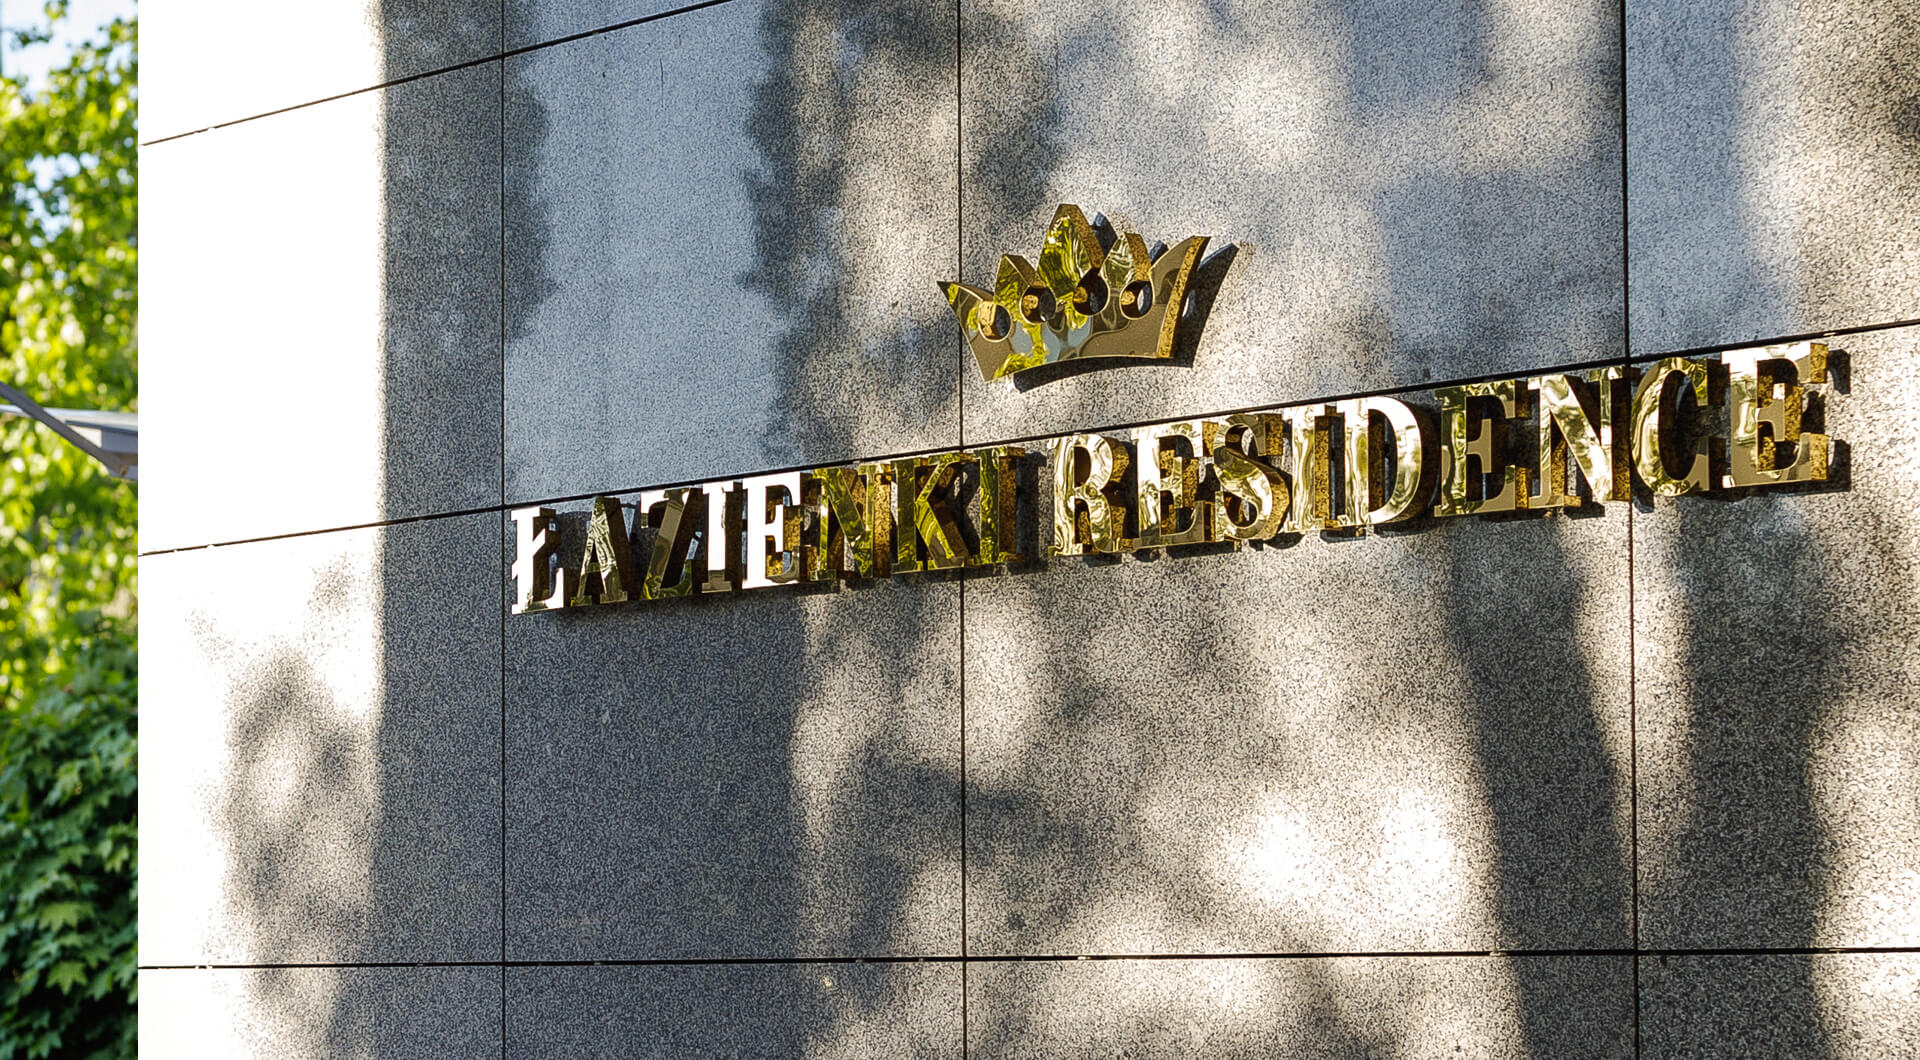 Bäder Residenz - Schriftzug Bathroom Residence aus goldfarbenem Edelstahl, mit einer Krone im Logo.